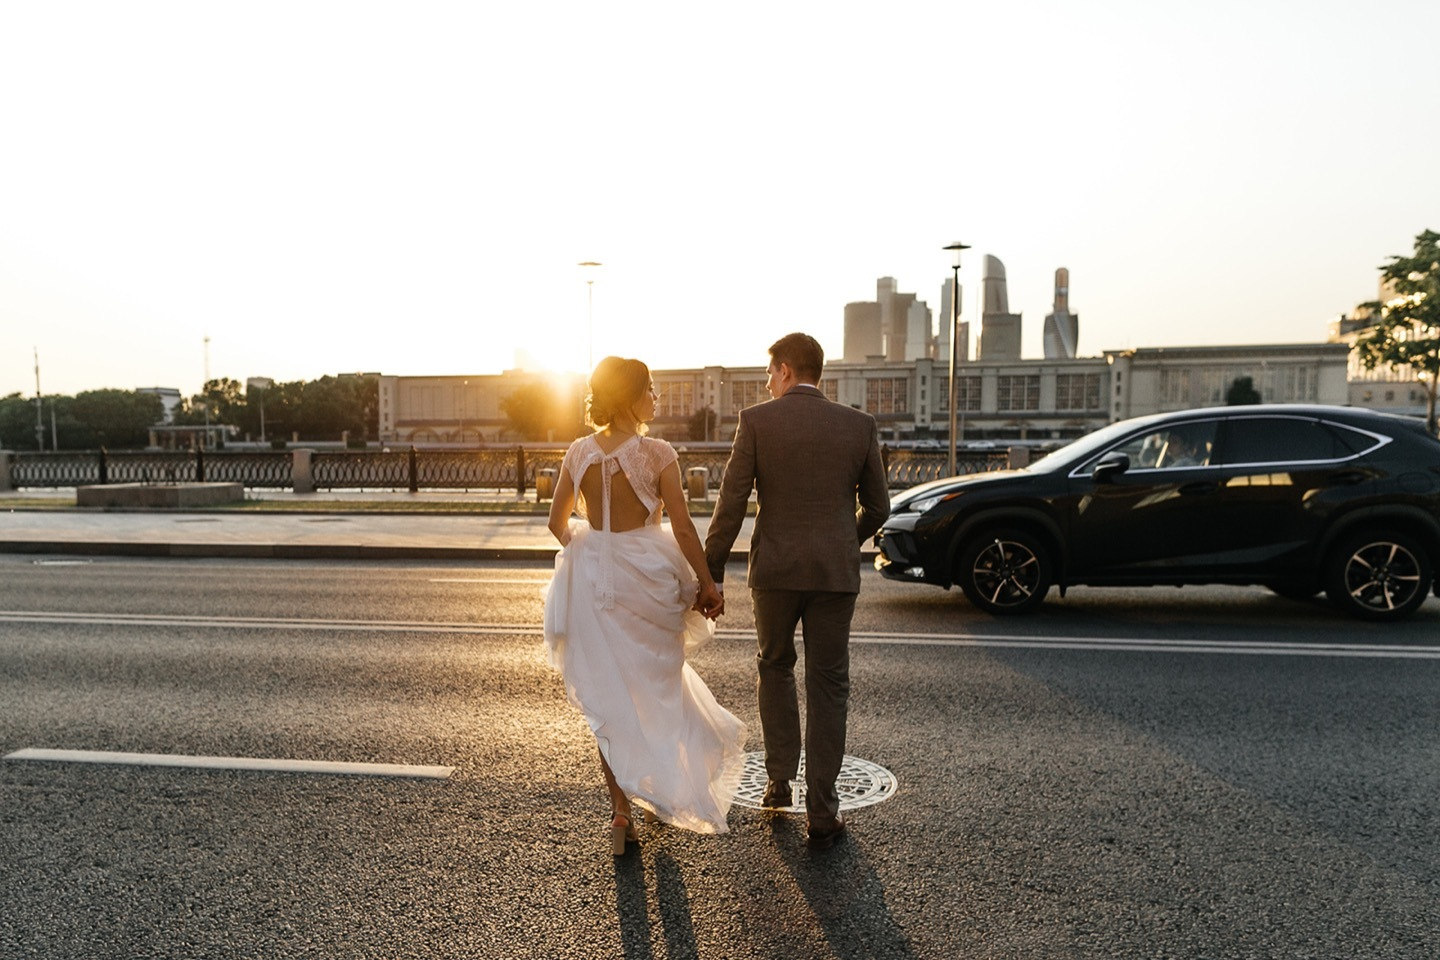 ФОТО ИЗ СТАТЬИ: Элегантная свадьба в урбан-стилистике